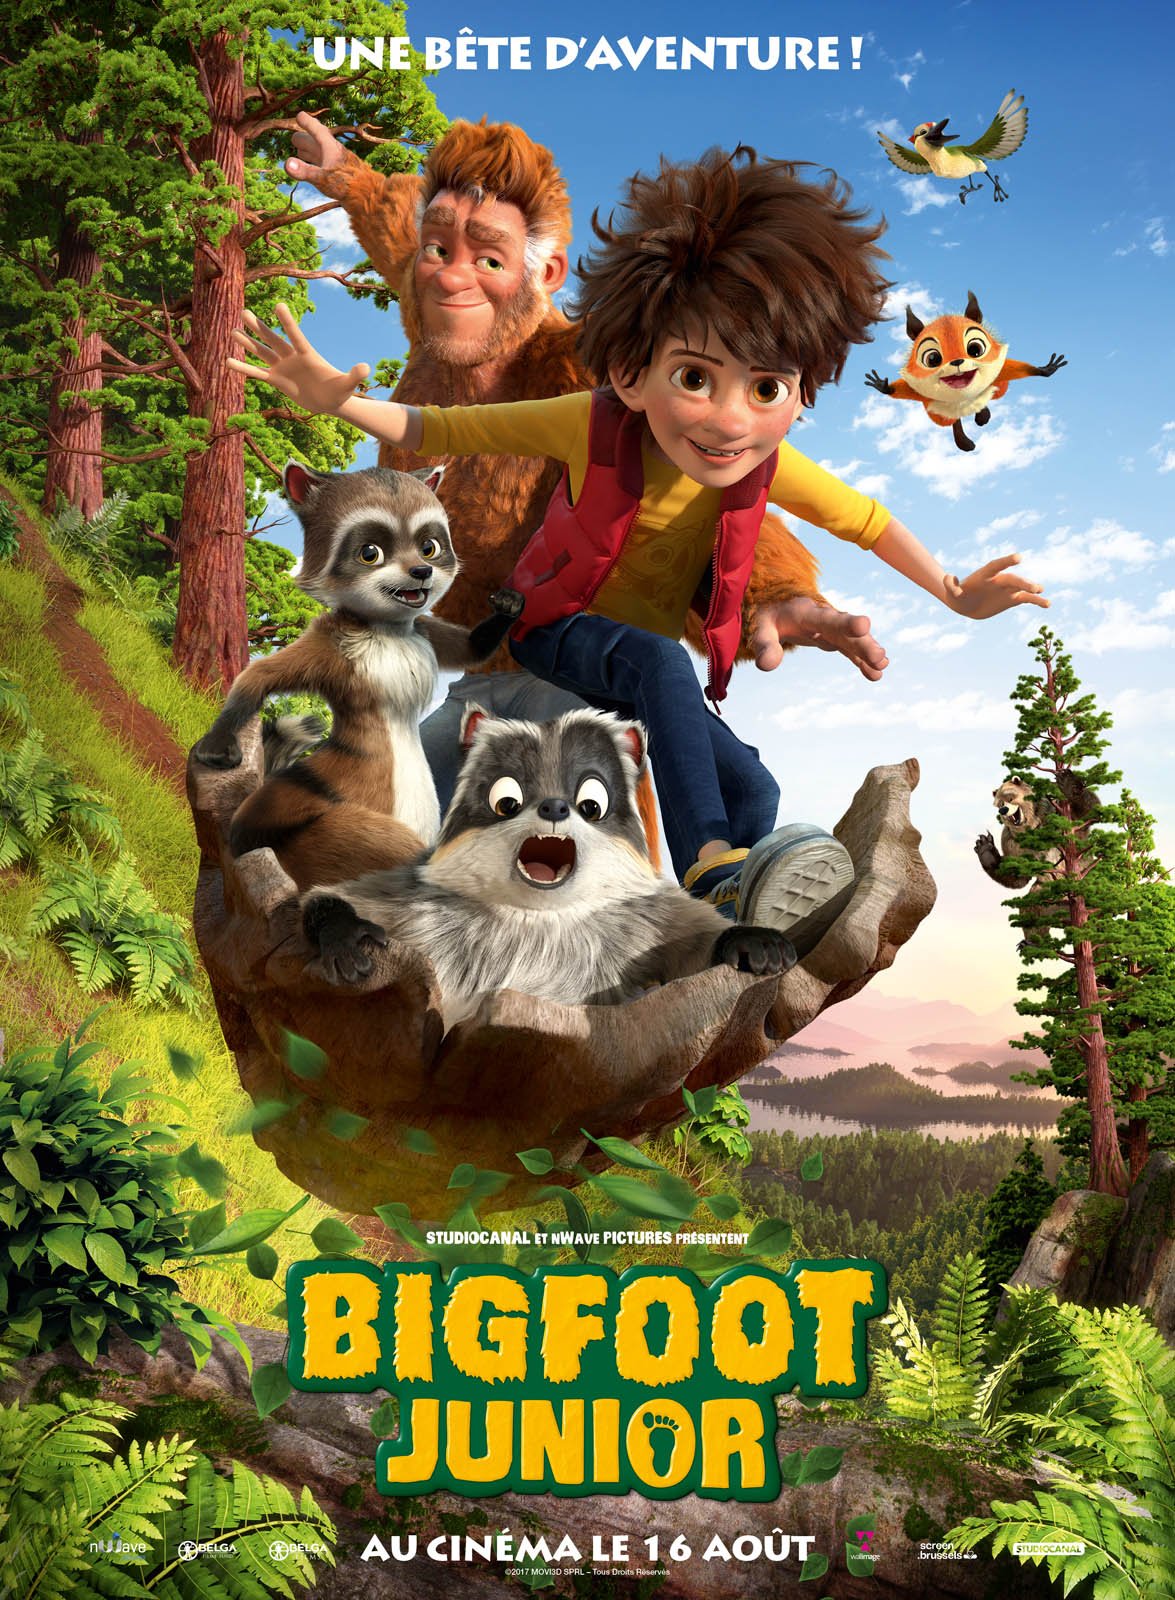 RÃ©sultat de recherche d'images pour "Bigfoot Junior"